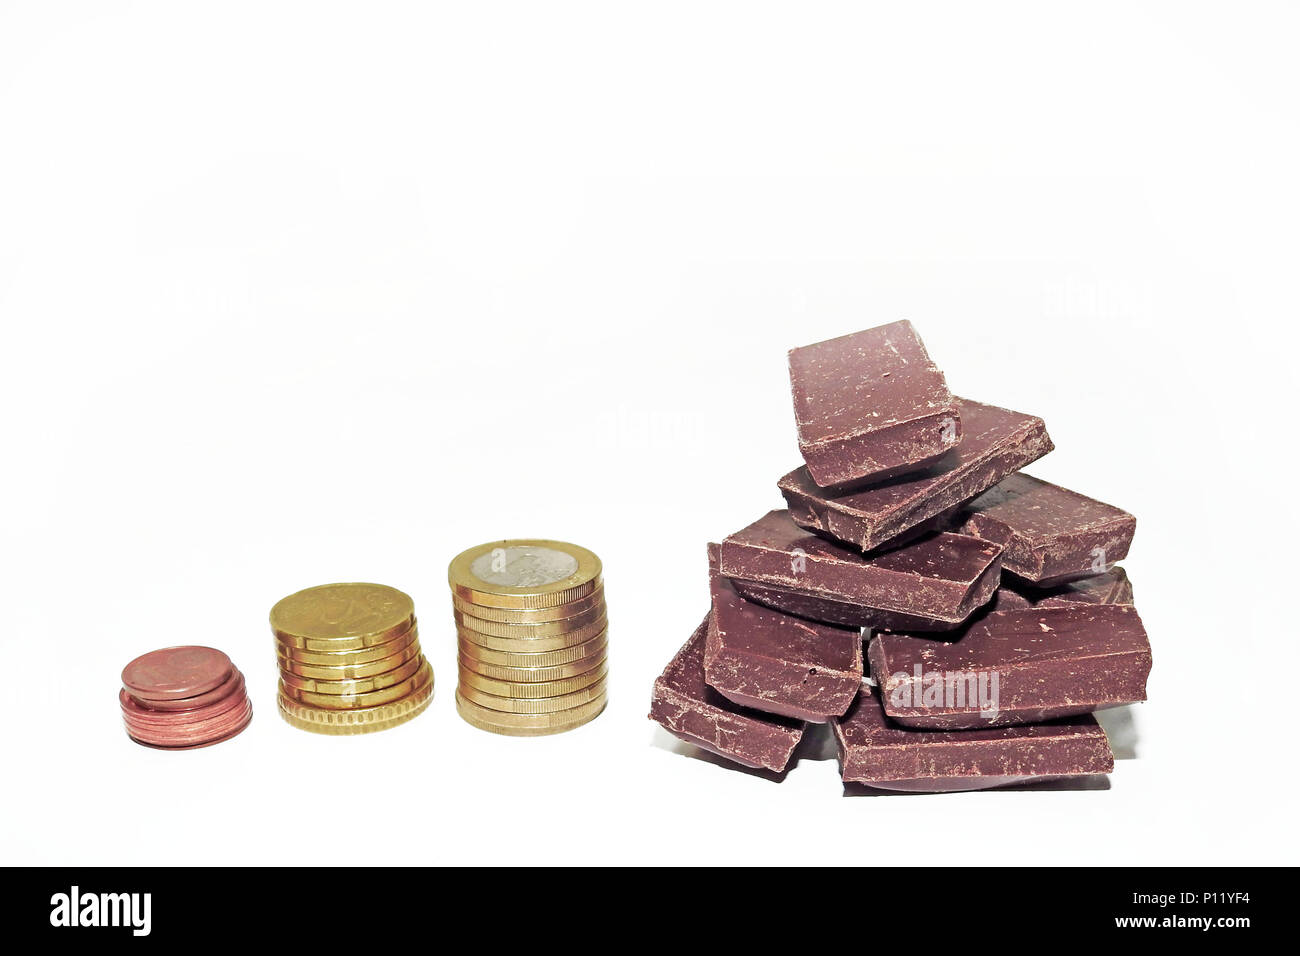 L'Abstraction sur une hausse du prix du chocolat. Isolé sur fond blanc. Banque D'Images